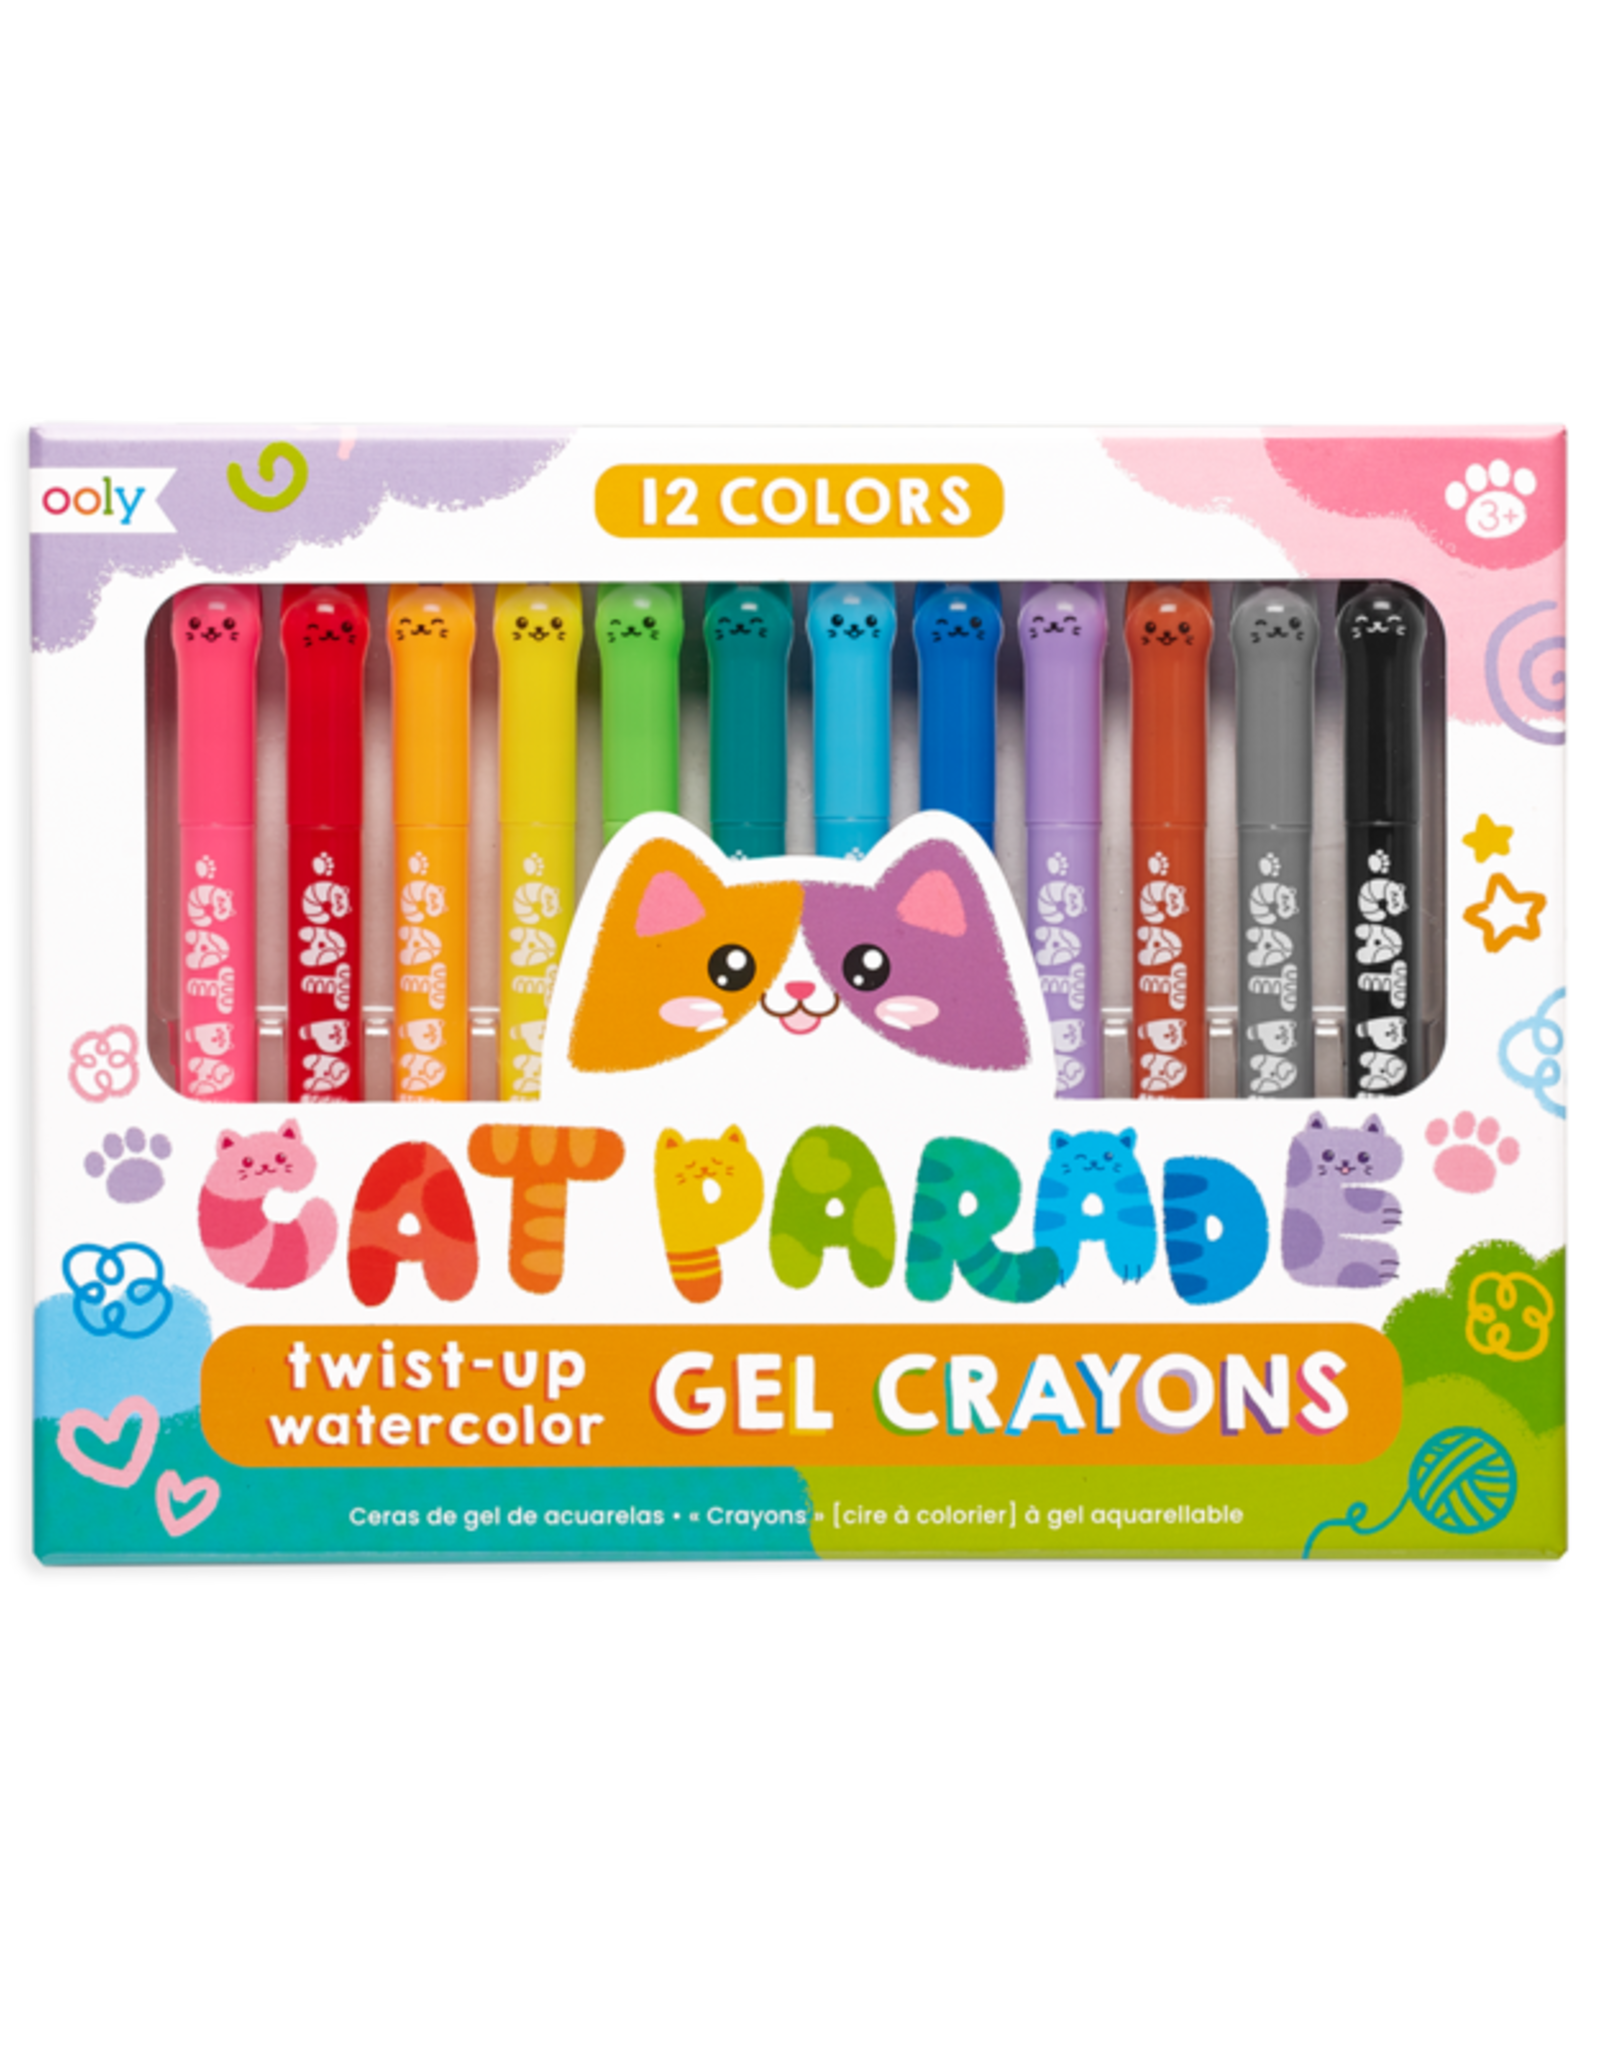 OOLY cat parade gel crayons